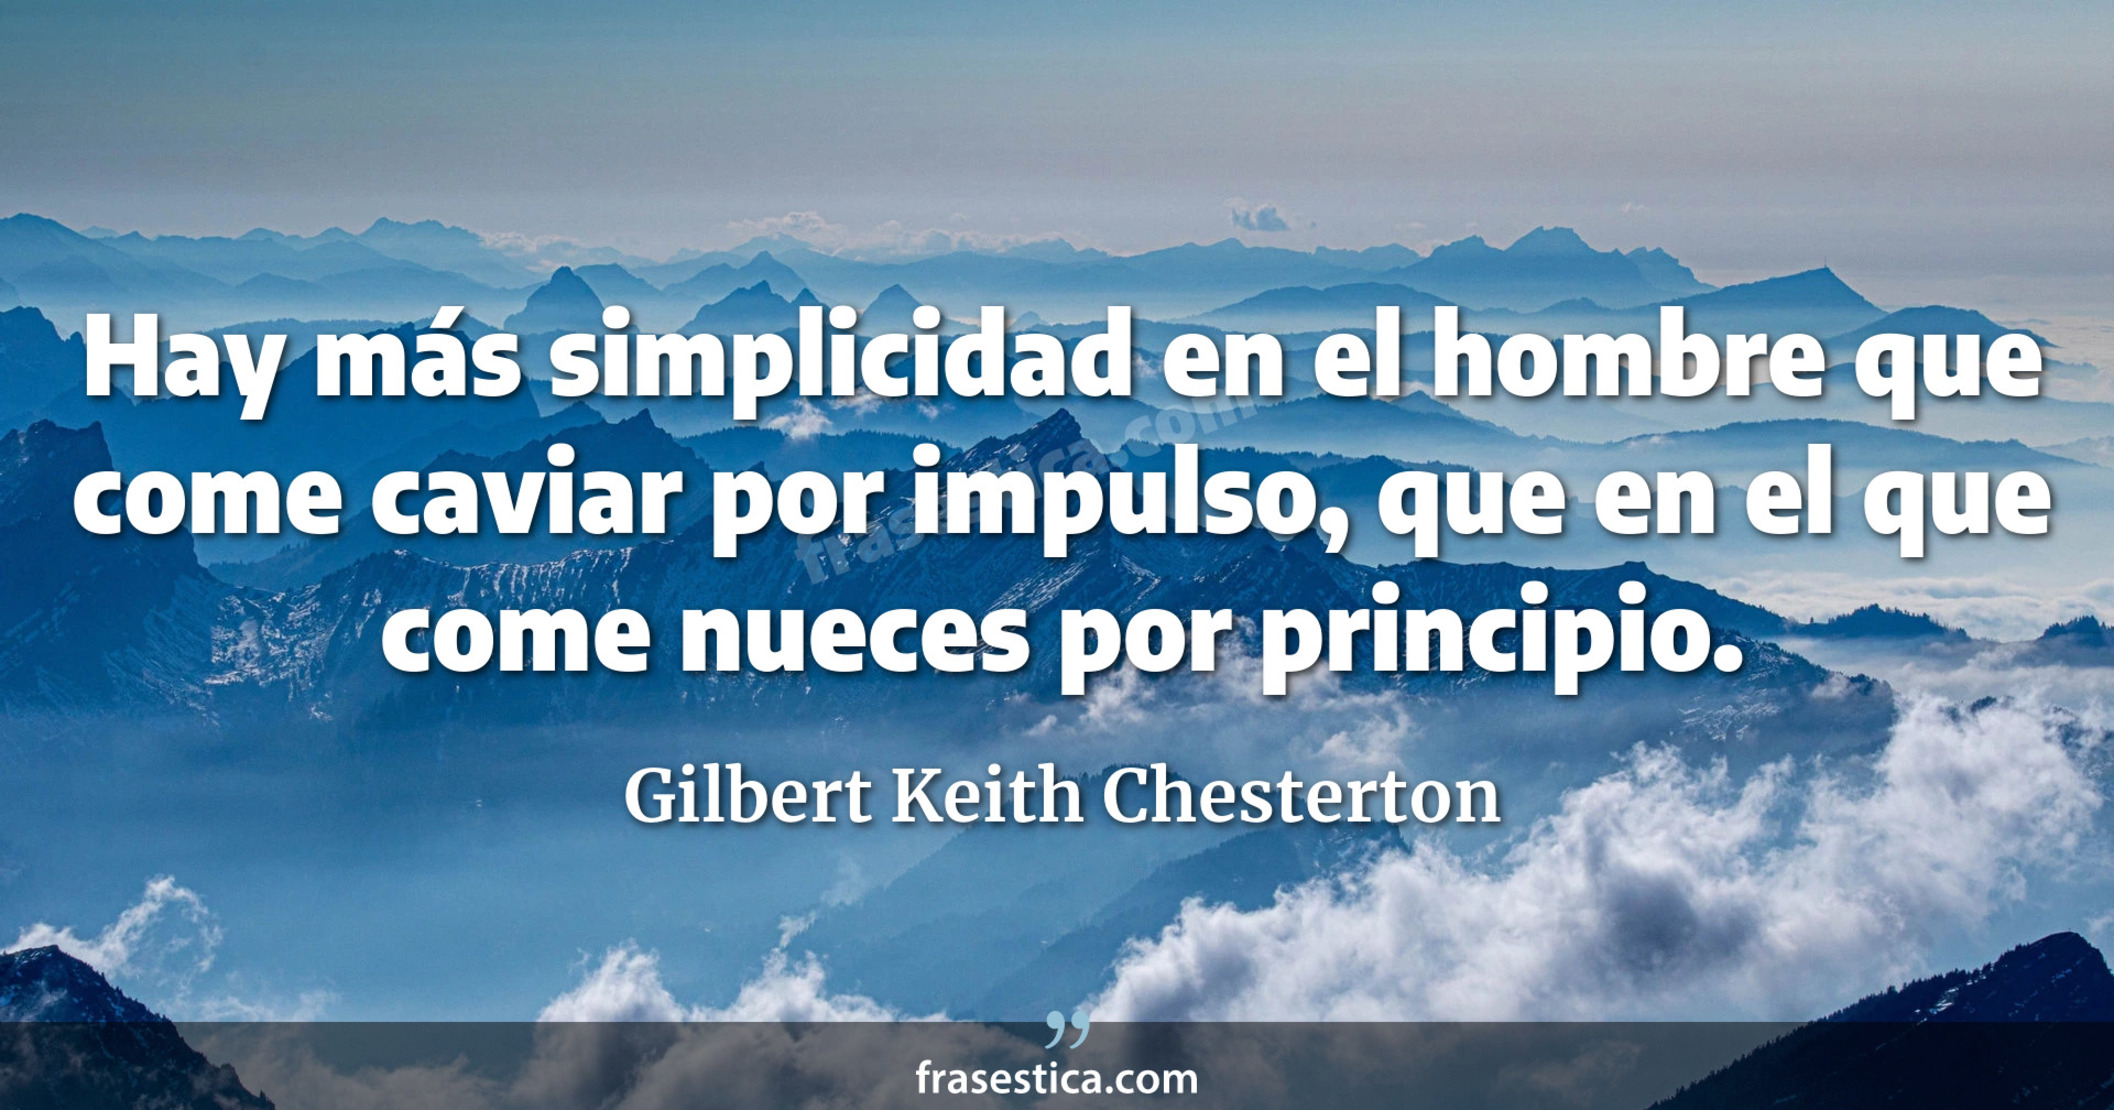 Hay más simplicidad en el hombre que come caviar por impulso, que en el que come nueces por principio. - Gilbert Keith Chesterton